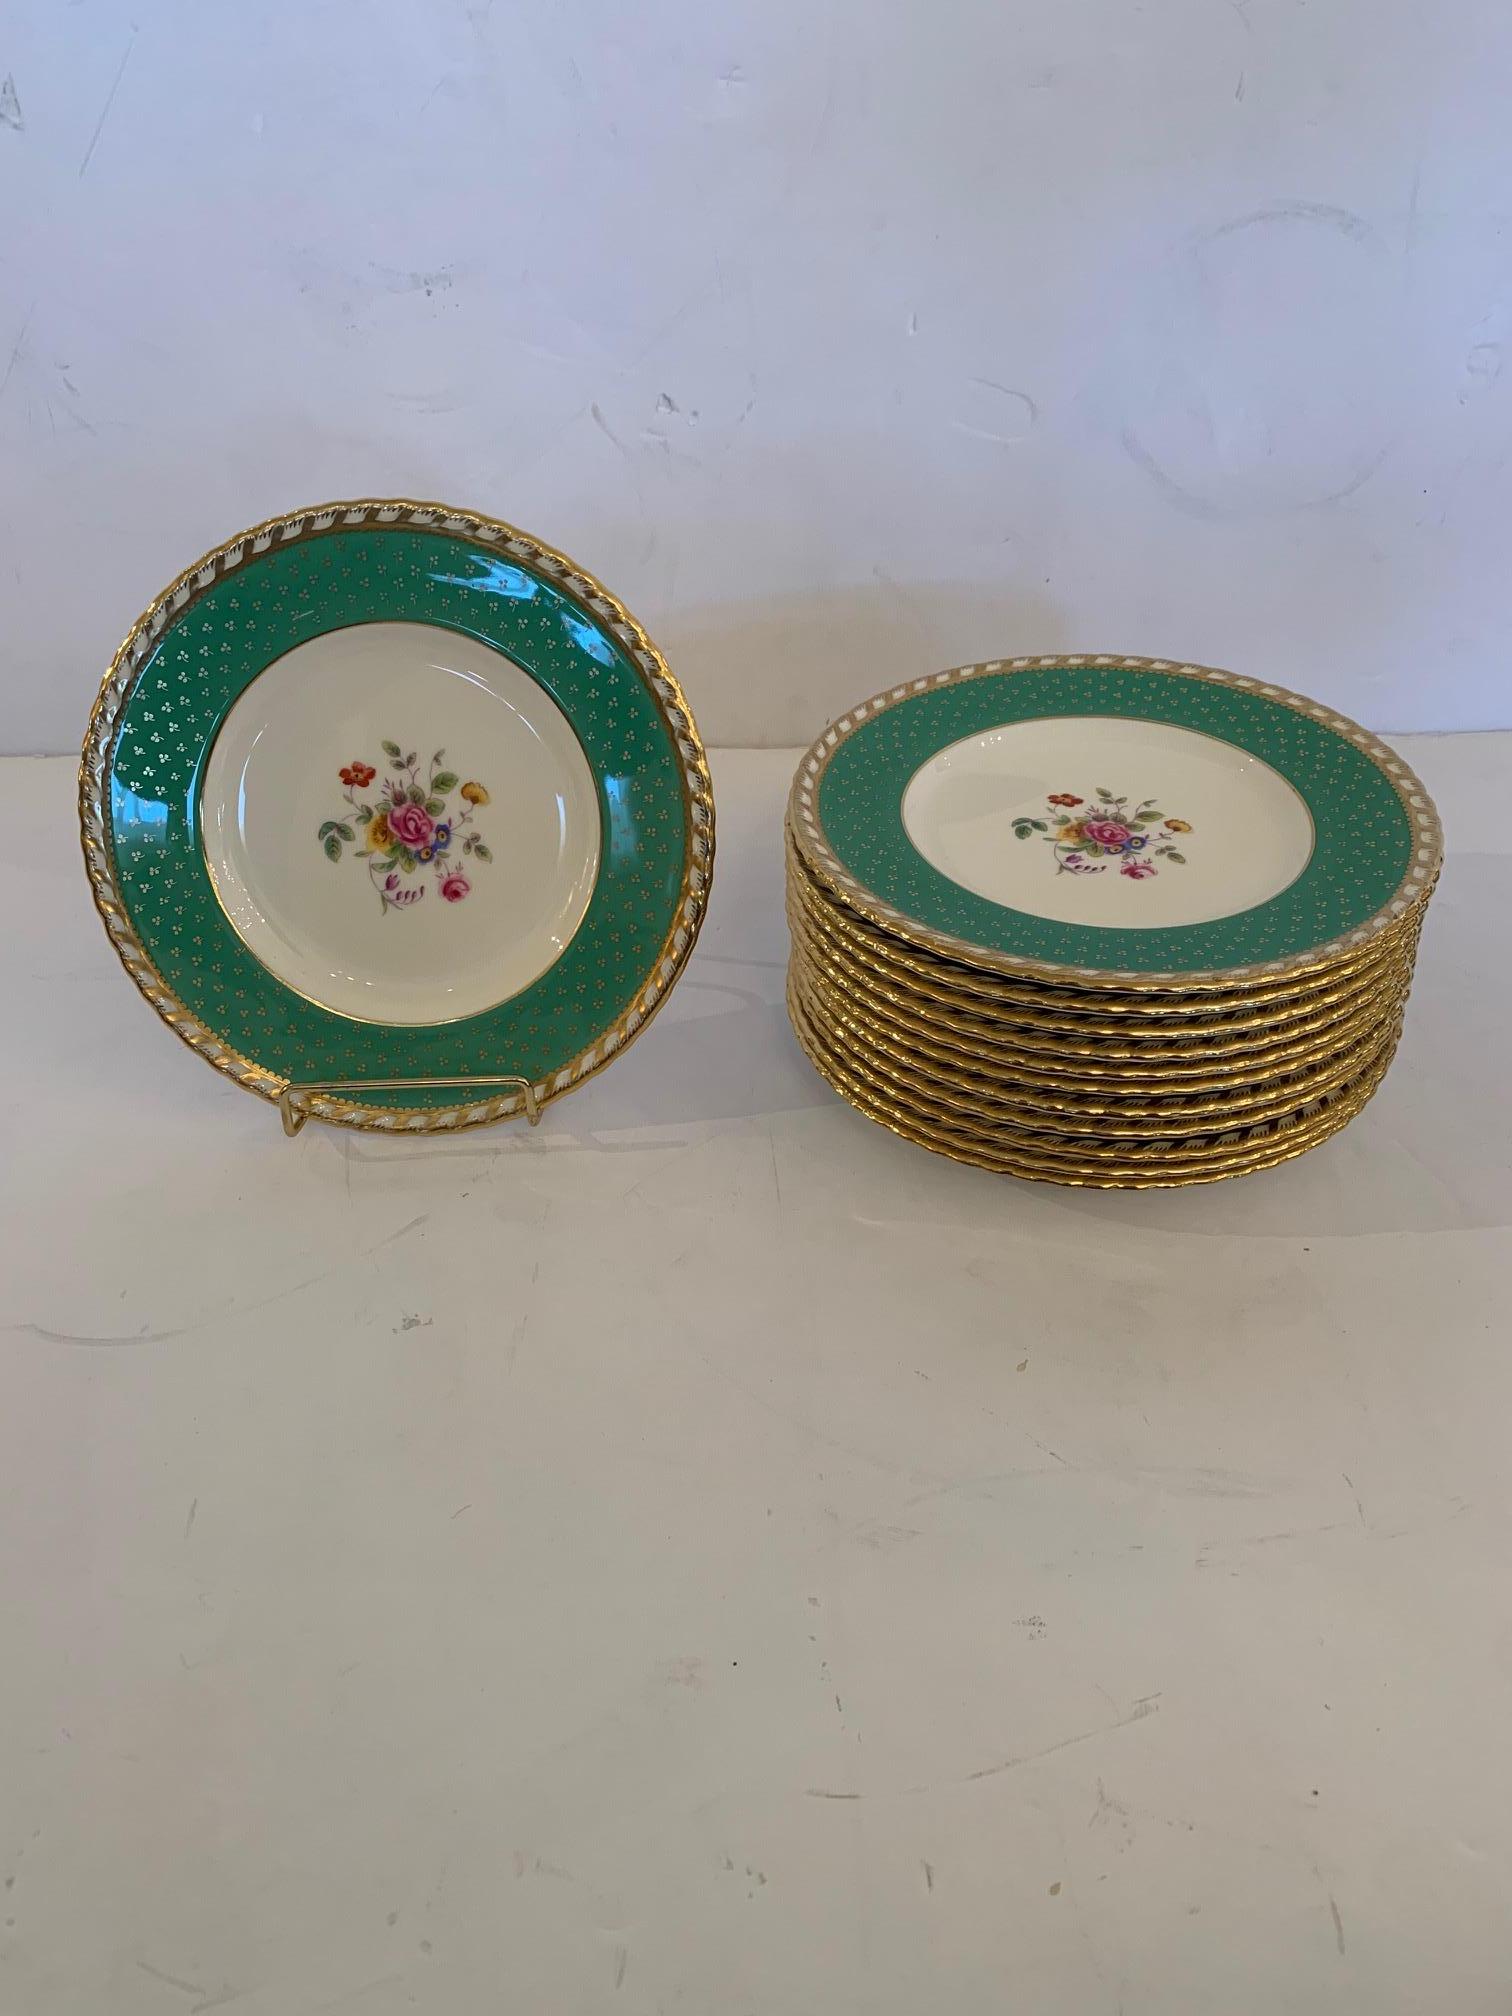 Un magnifique ensemble de 12 assiettes à dessert en porcelaine Tiffany avec des bordures vert céladon et or, des centres crème et une belle décoration centrale florale.